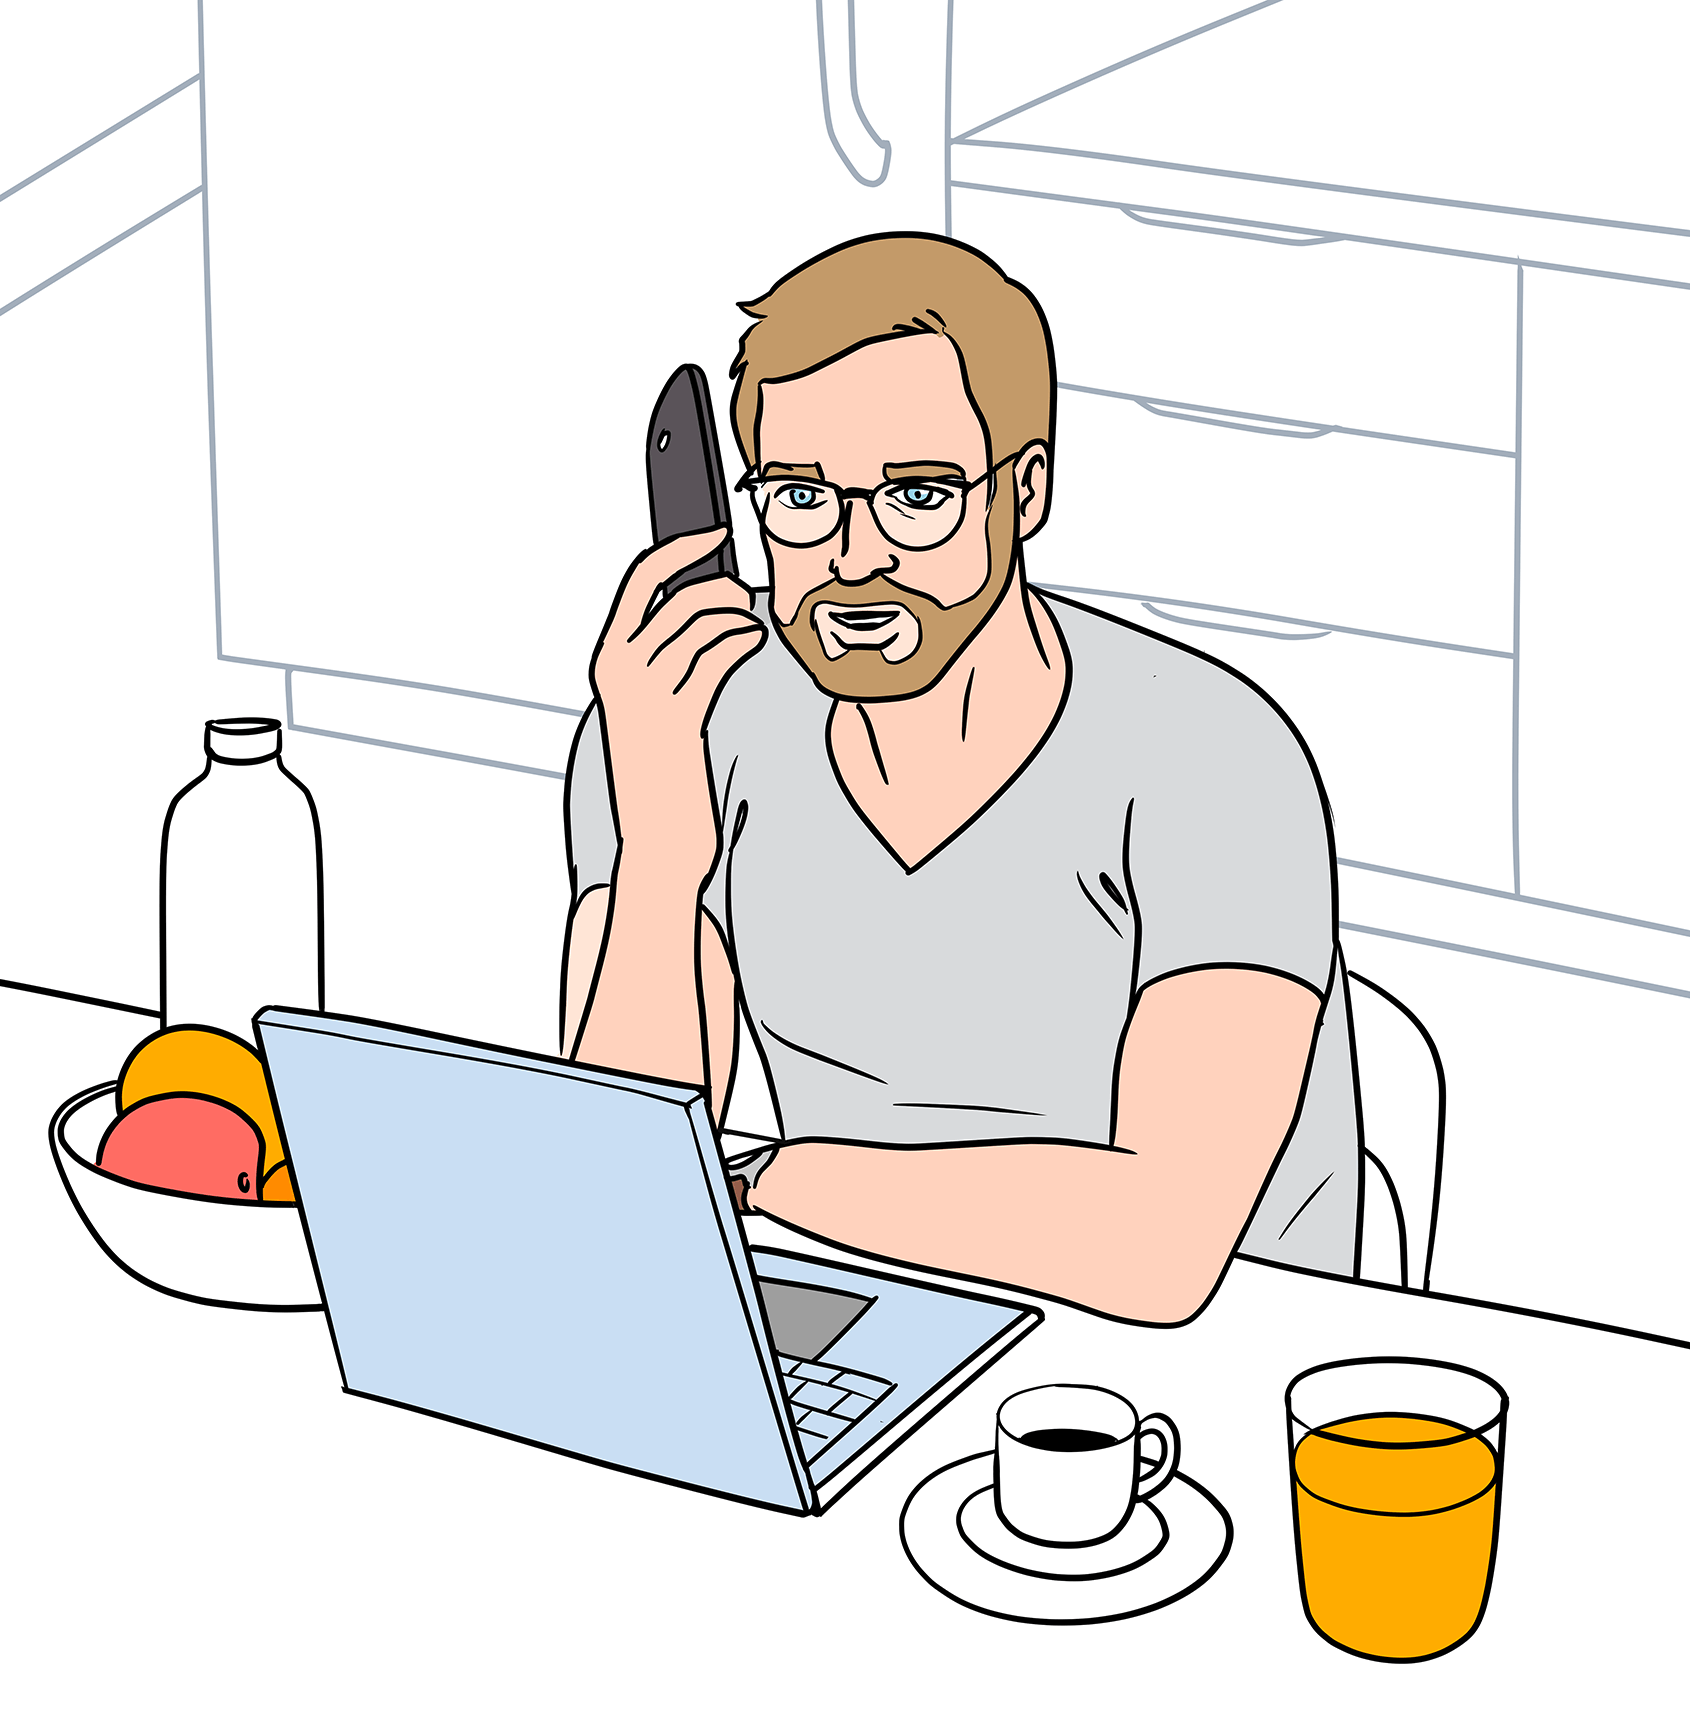 Stephan Peters sitzt mit seinem Laptop am Frühstückstisch und telefoniert.